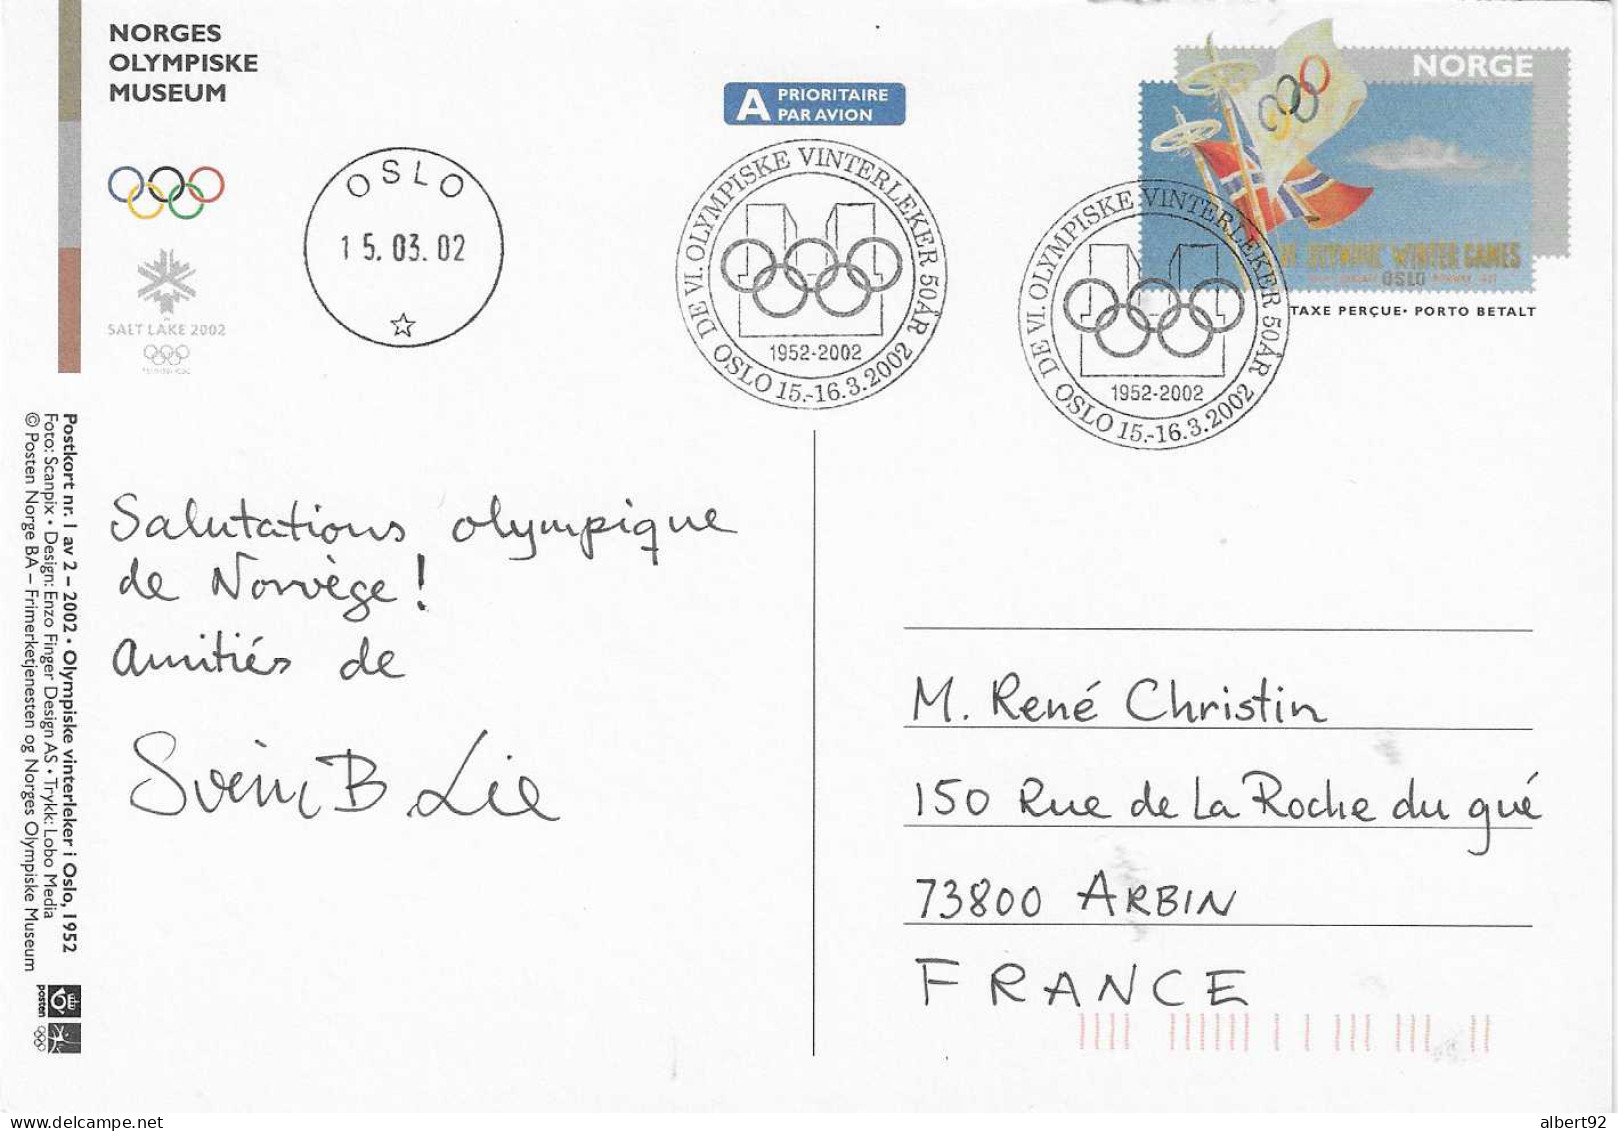 2002 50e Anniv. Des Jeux Olympiques D'Oslo 1952: Hommage Aux Médaillés Or: H.Andersen (patinage)et H.Brenden (ski Fond) - Invierno 1952: Oslo